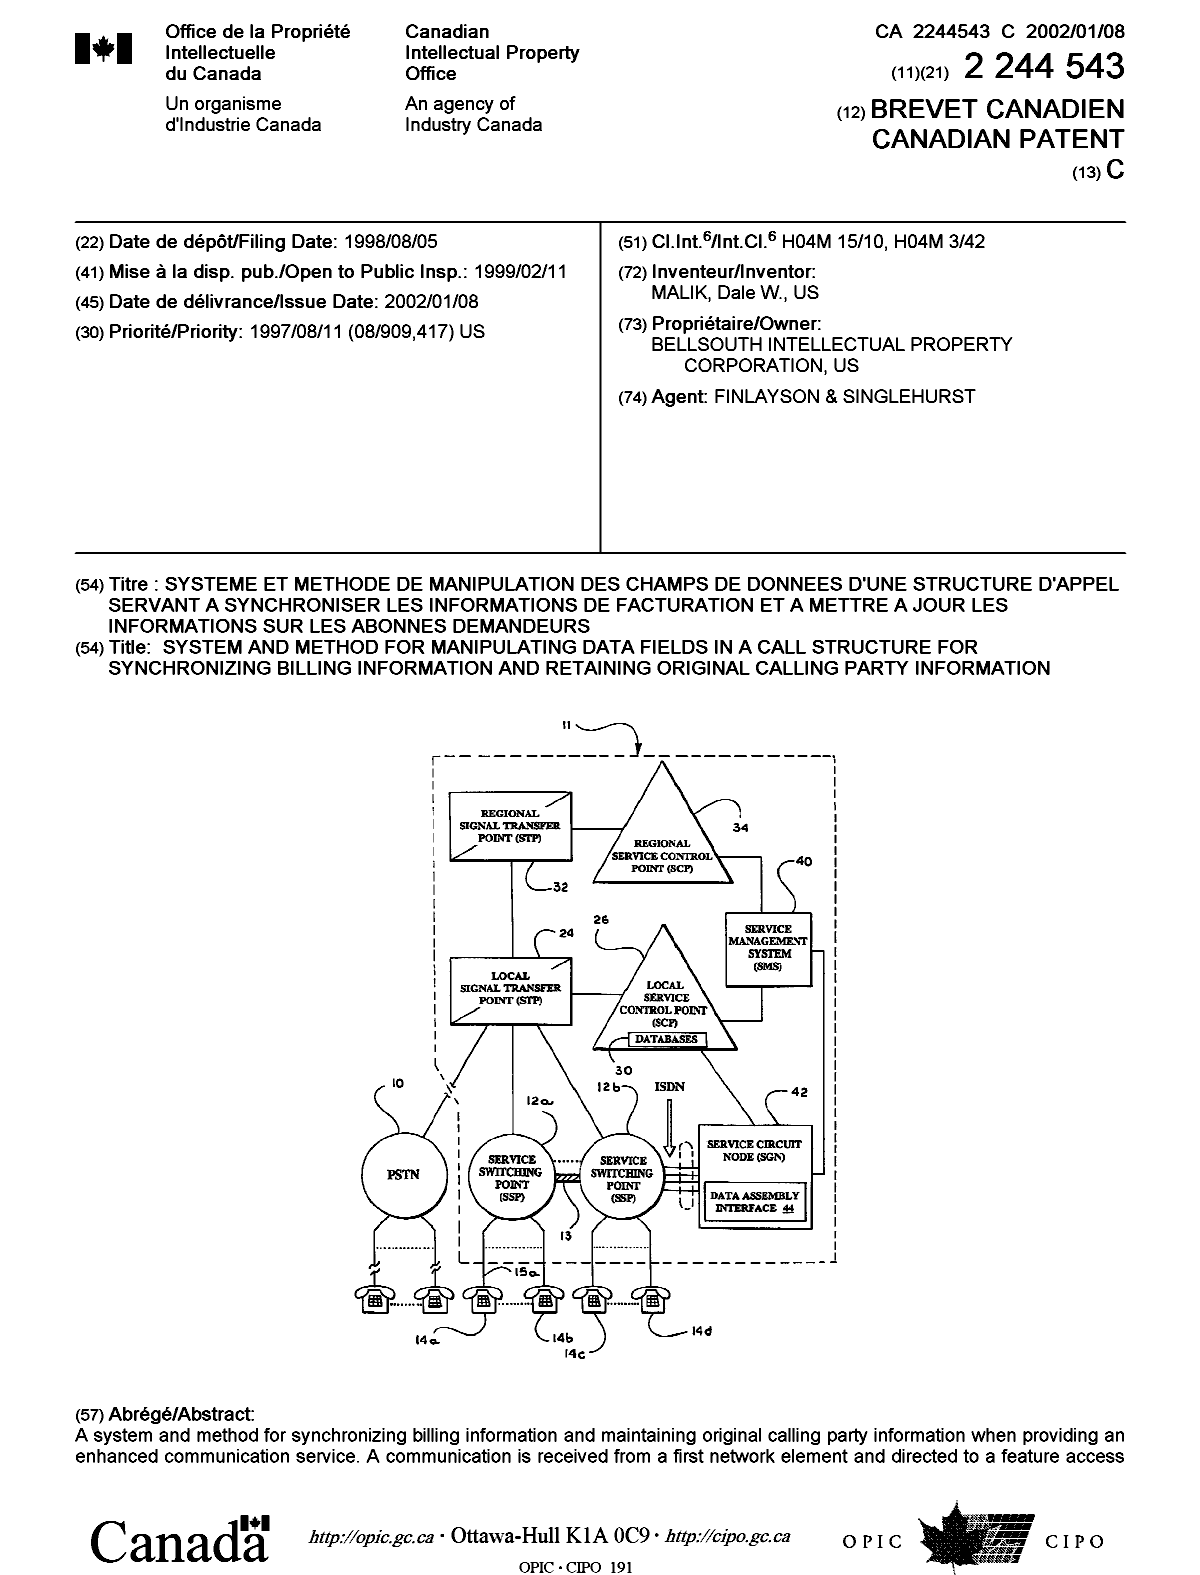 Document de brevet canadien 2244543. Page couverture 20011204. Image 1 de 2